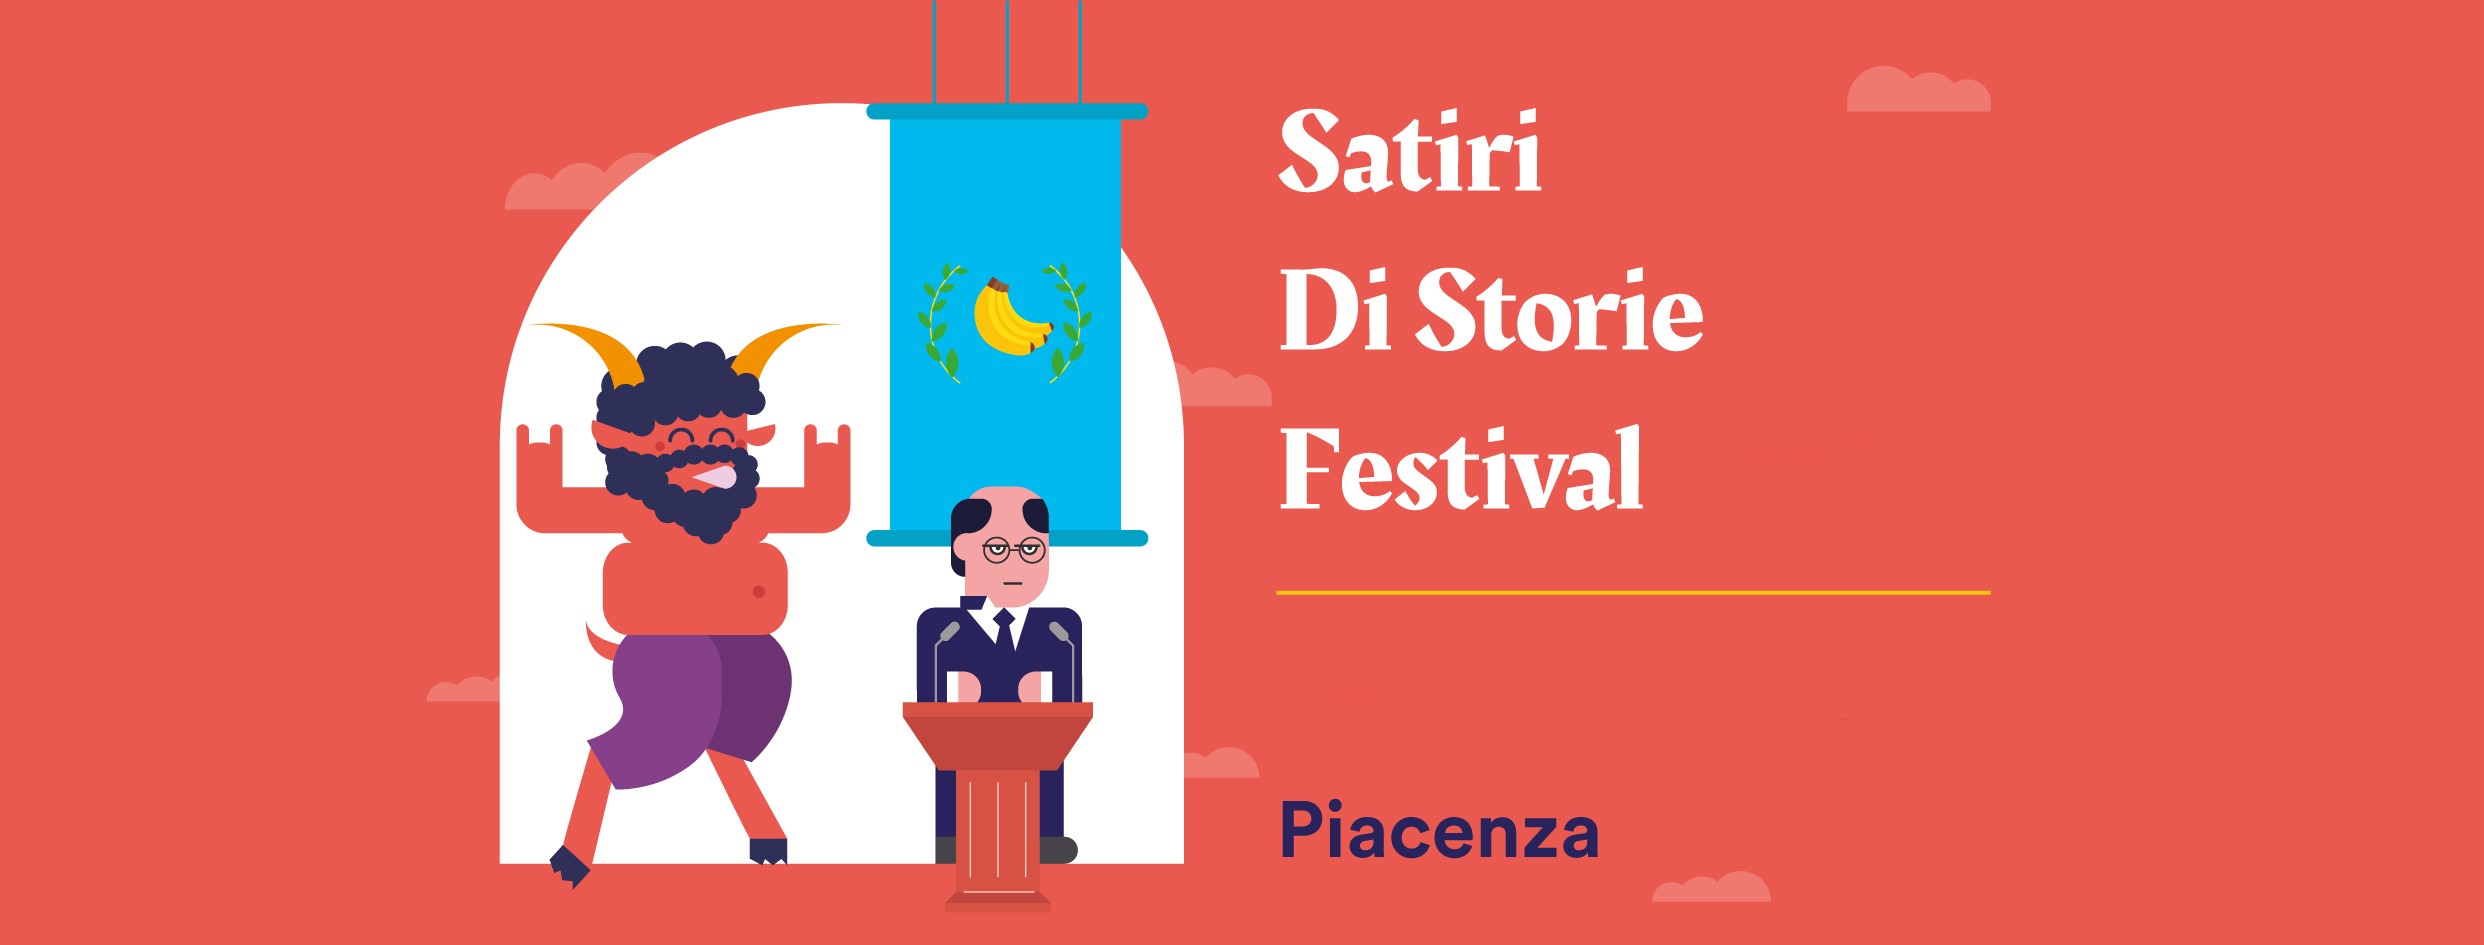 Satiri Di Storie Festival III Ed. Festival della Satira